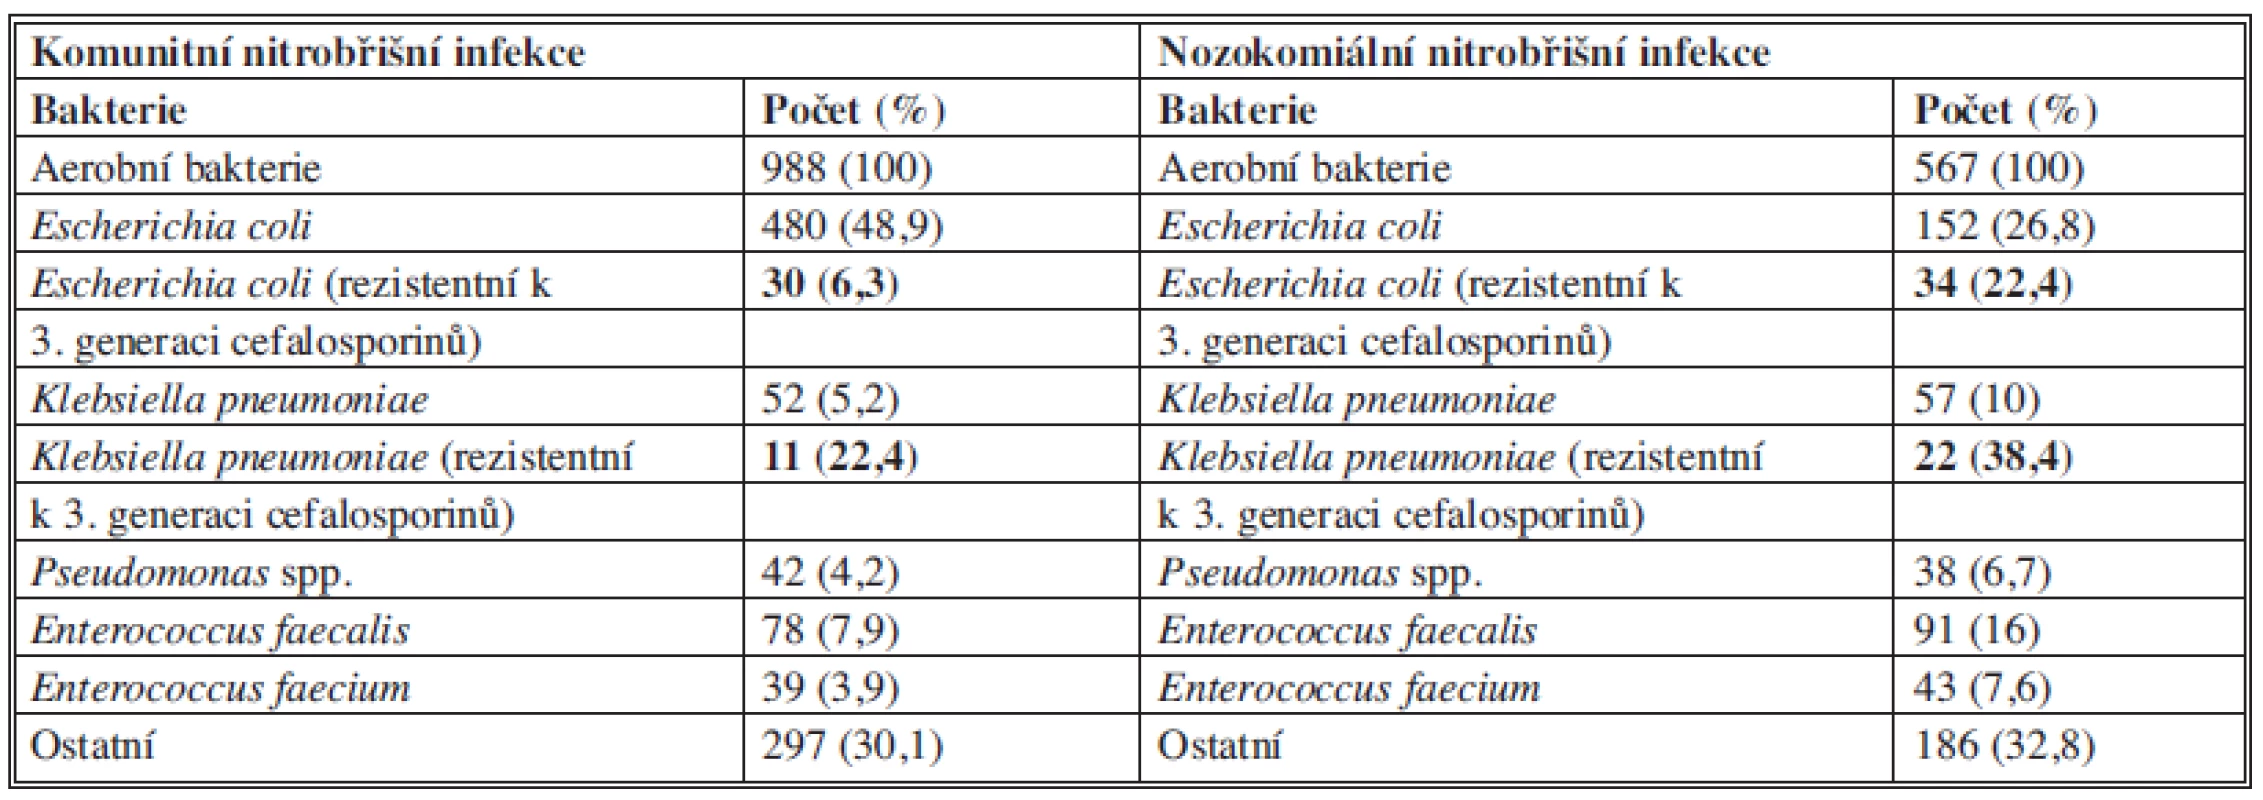 Zastoupení bakterií u komunitních a nozokomiálních nitrobřišních infekcí (CIAO Study)
Tab. 3: Microorganisms in community-acquired and healthcare-associated (nosocomial) IAIs